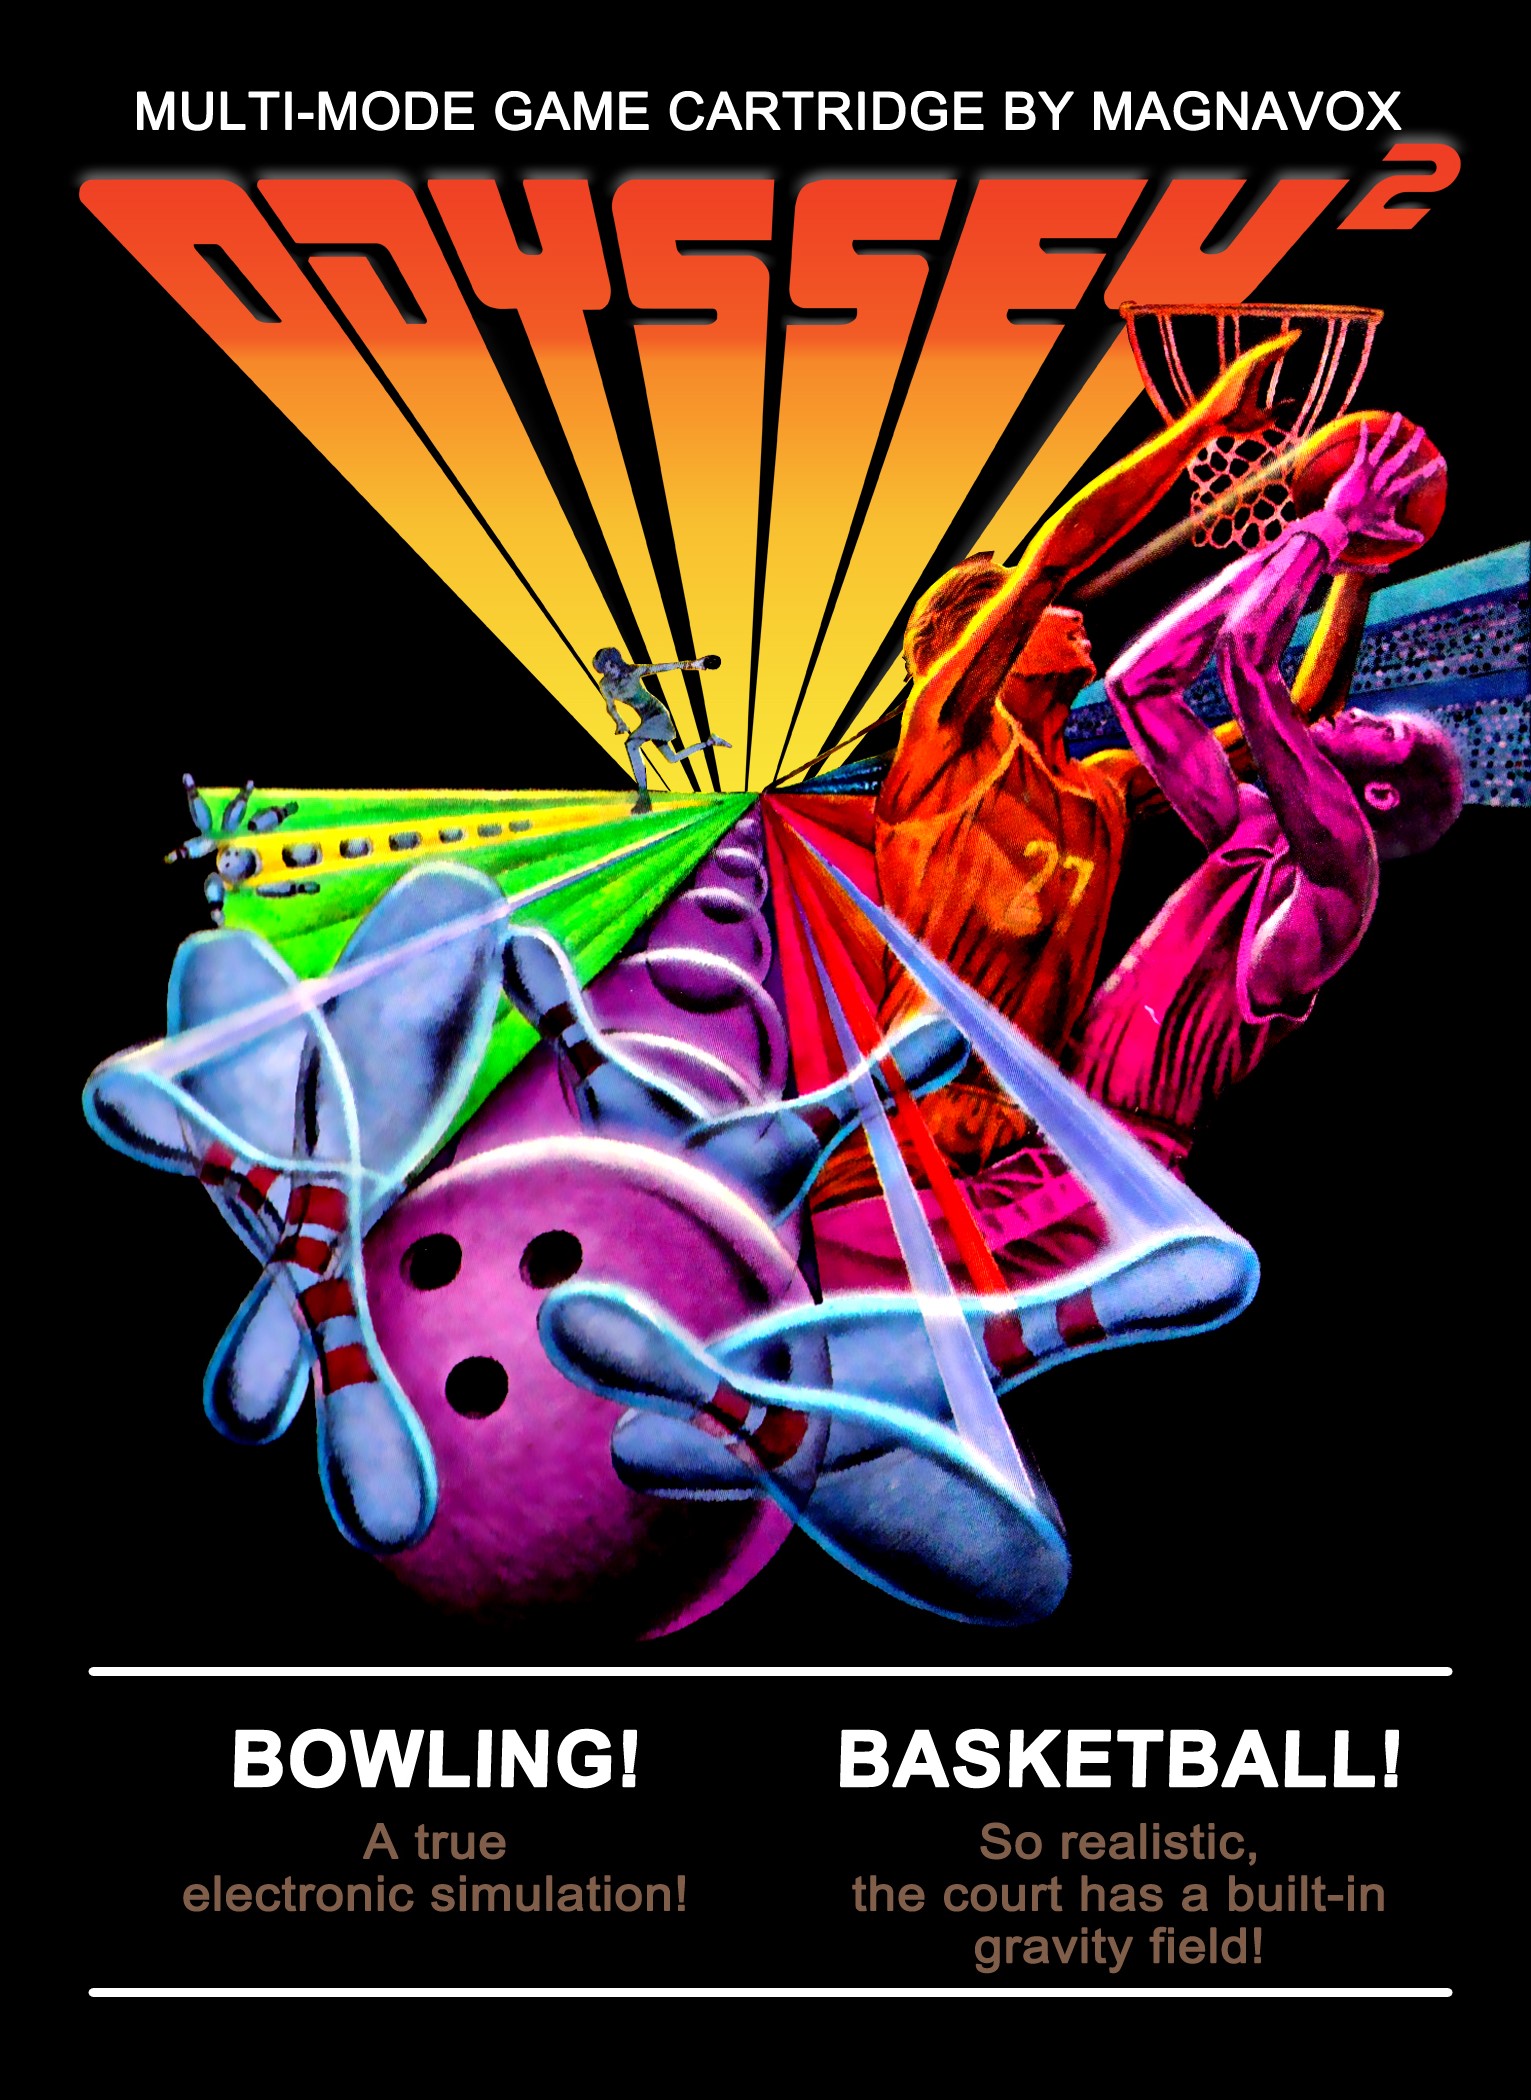 'Bowling' / 'Basketball'